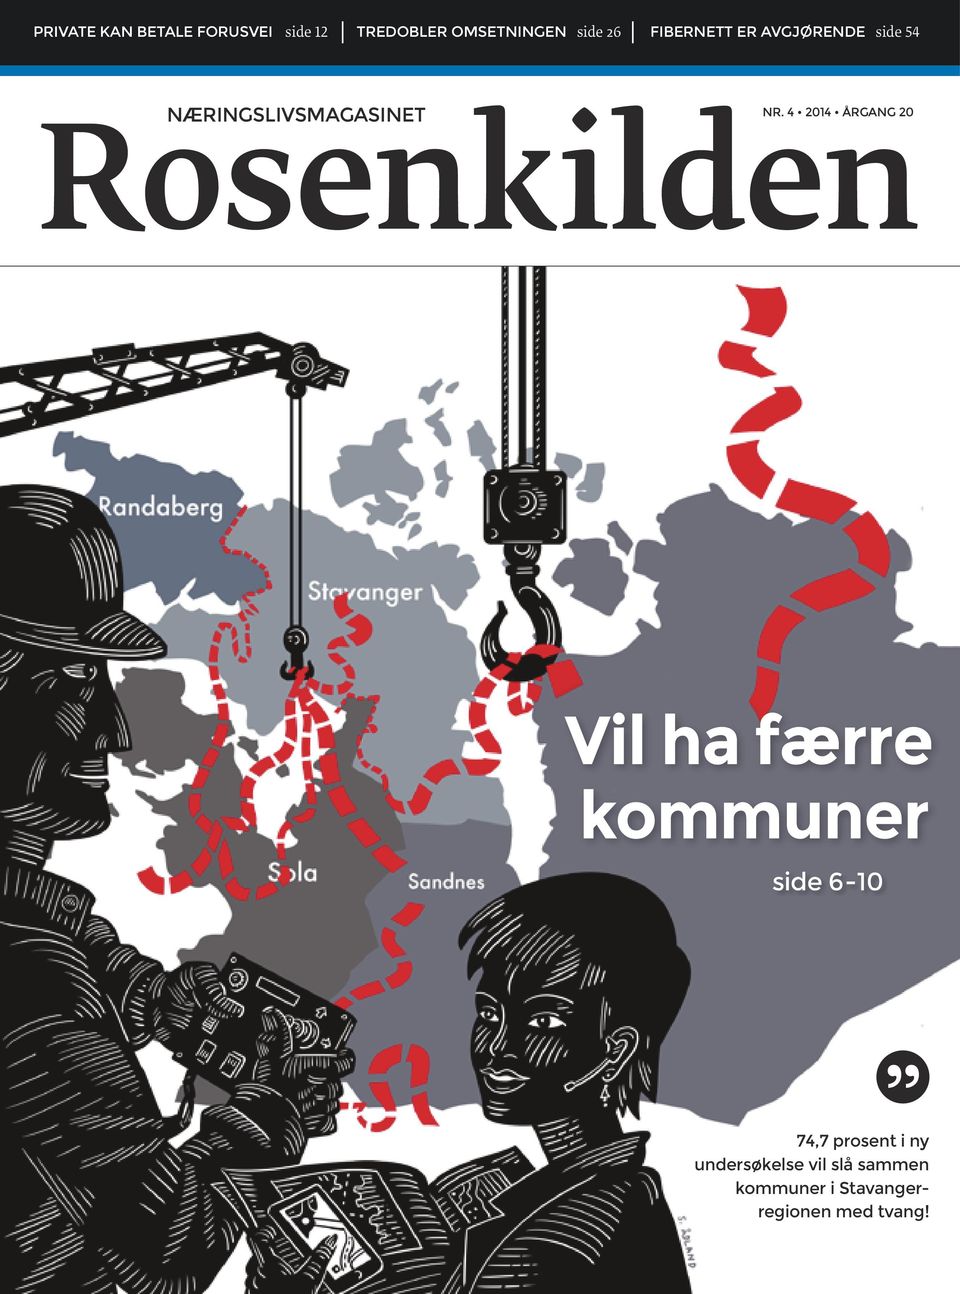 4 2014 ÅRGANG 20 Rosenkilden Vil ha færre kommuner side 6-10 74,7